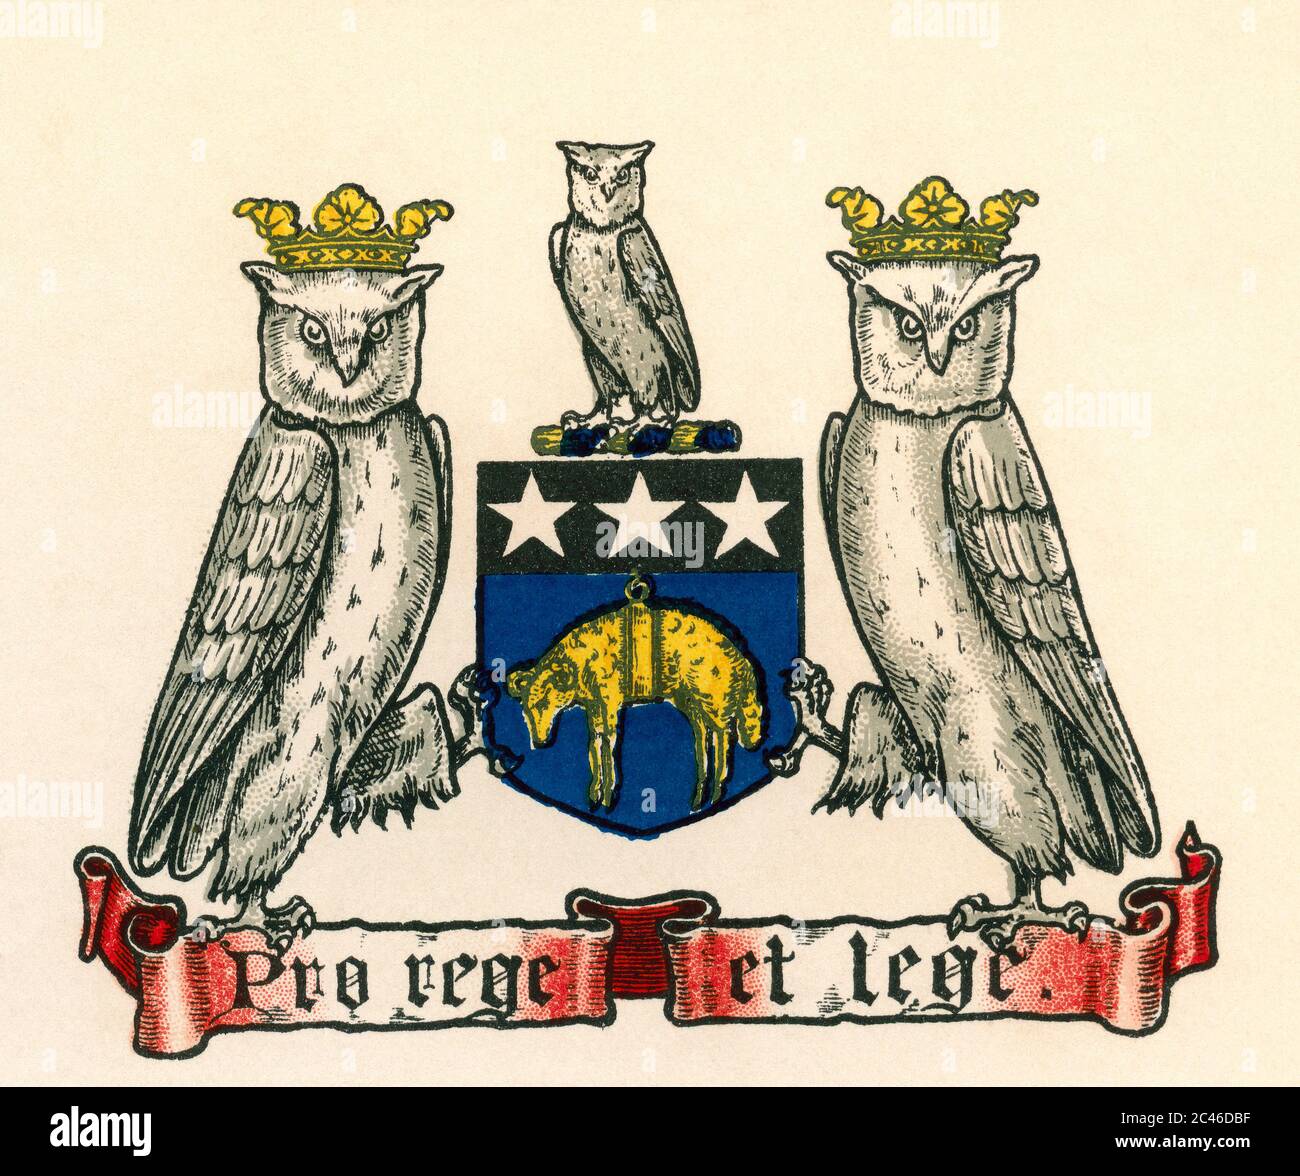 Escudo de armas de Leeds, Inglaterra. Estas armas se utilizaron antes de 1921. De la Enciclopedia de Negocios y Asesor Legal, publicado en 1907. Foto de stock